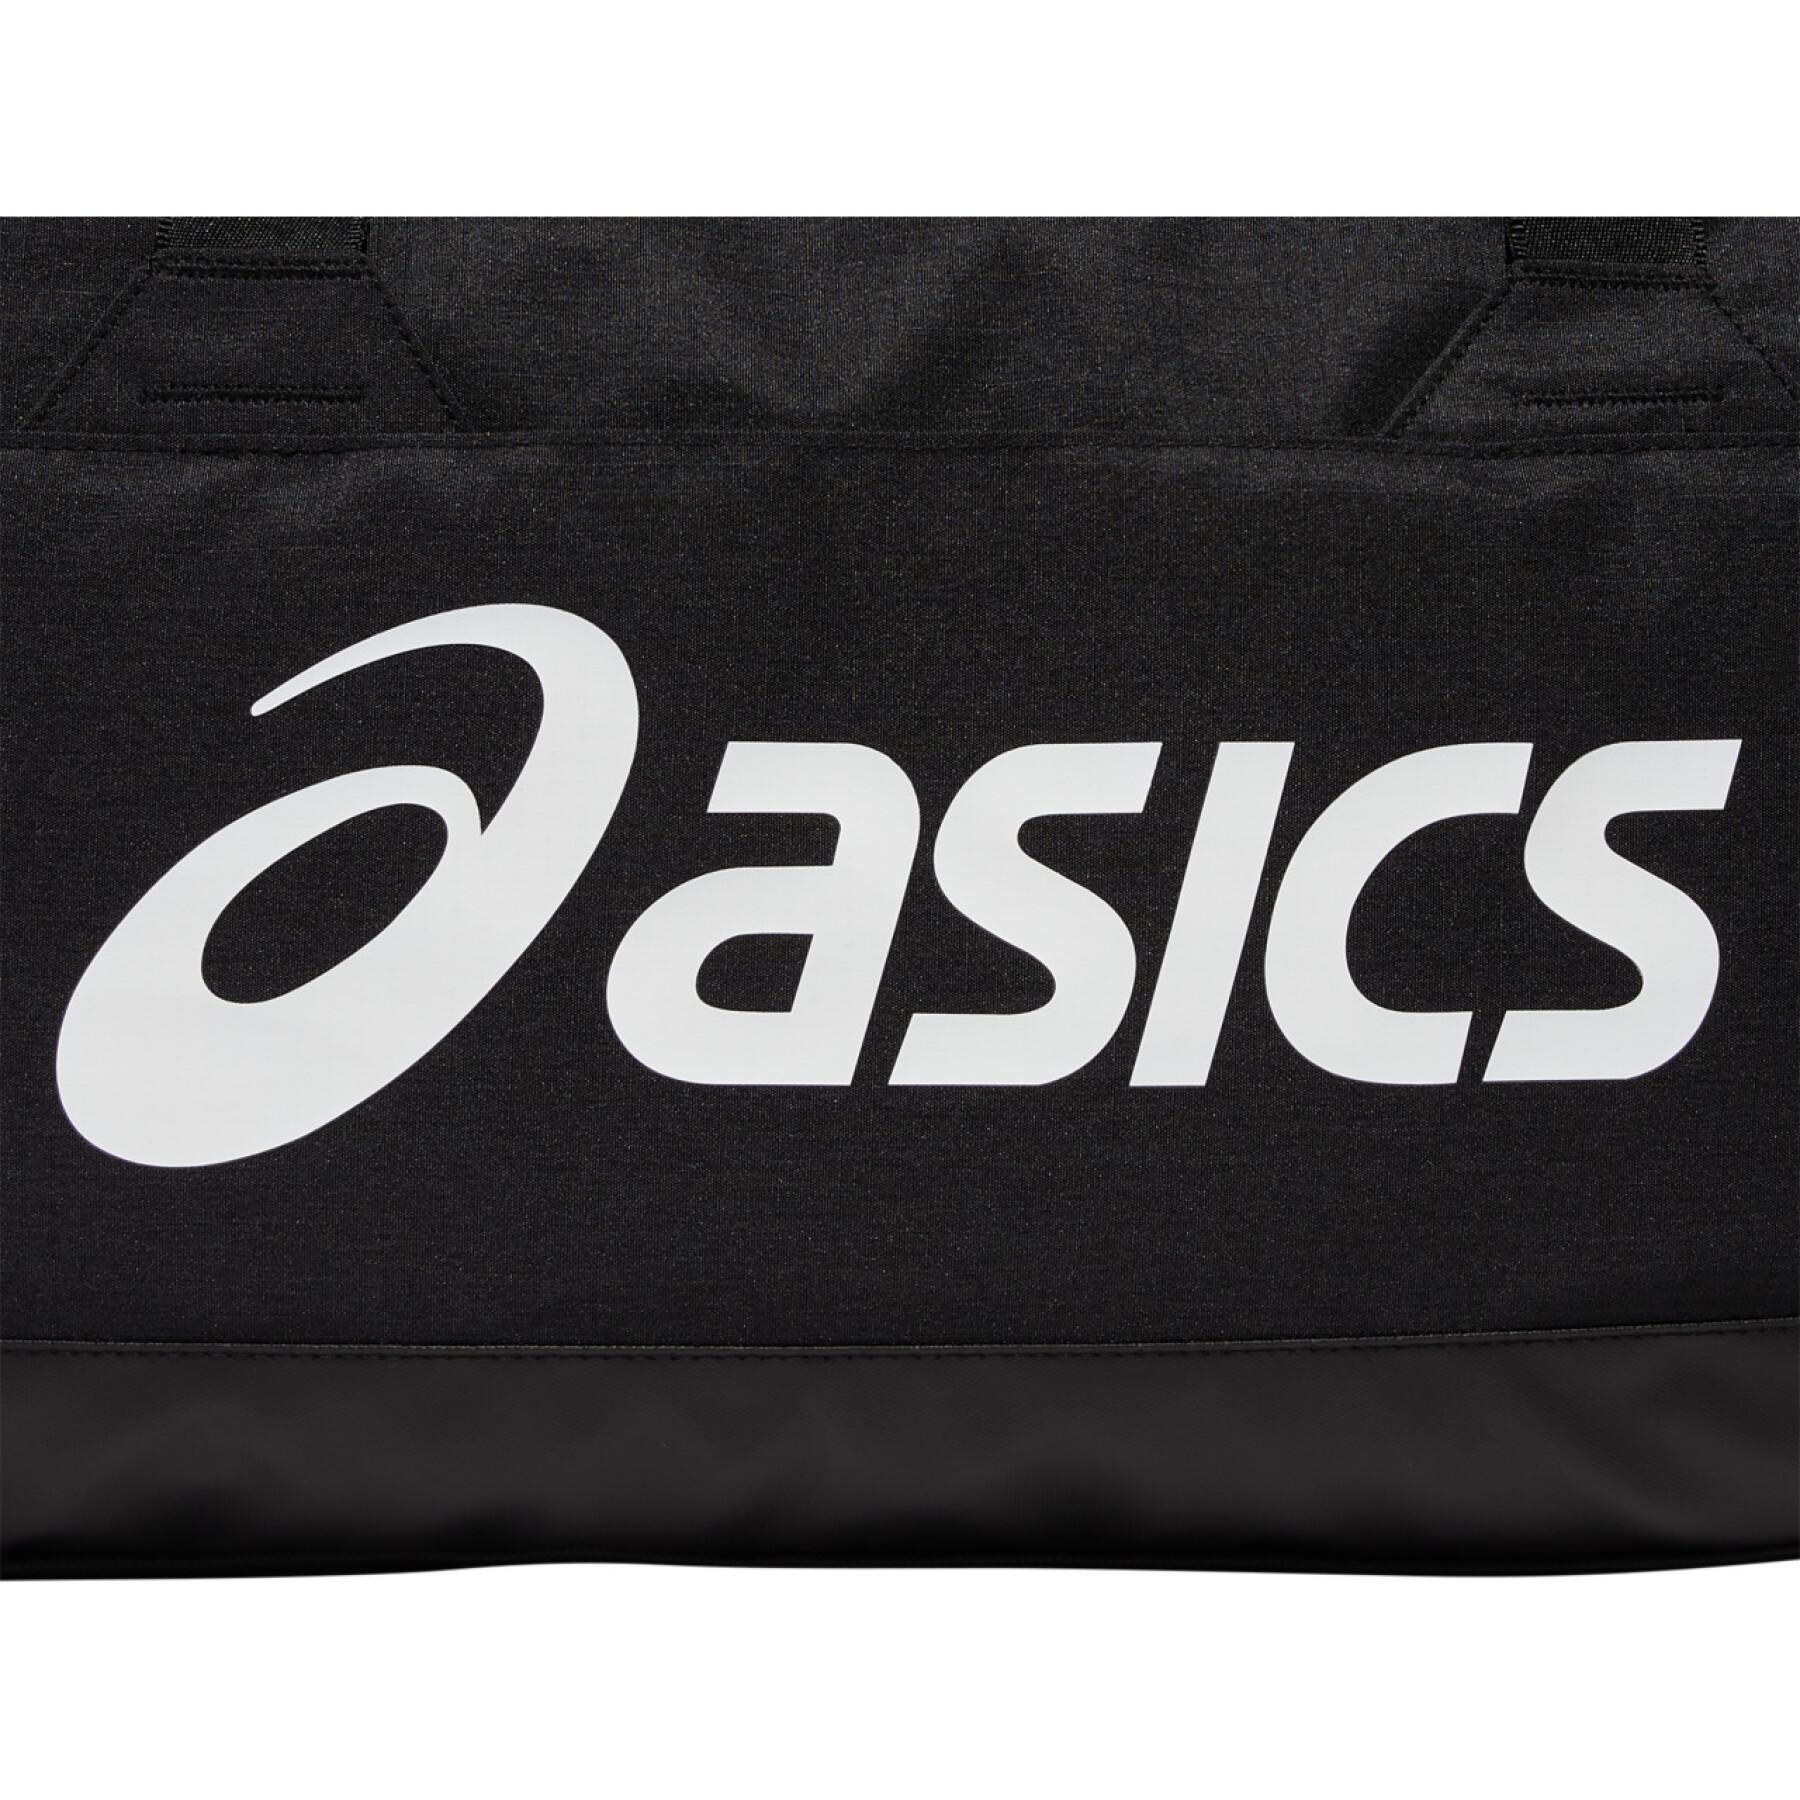 Sac à dos Asics Sports Bag M